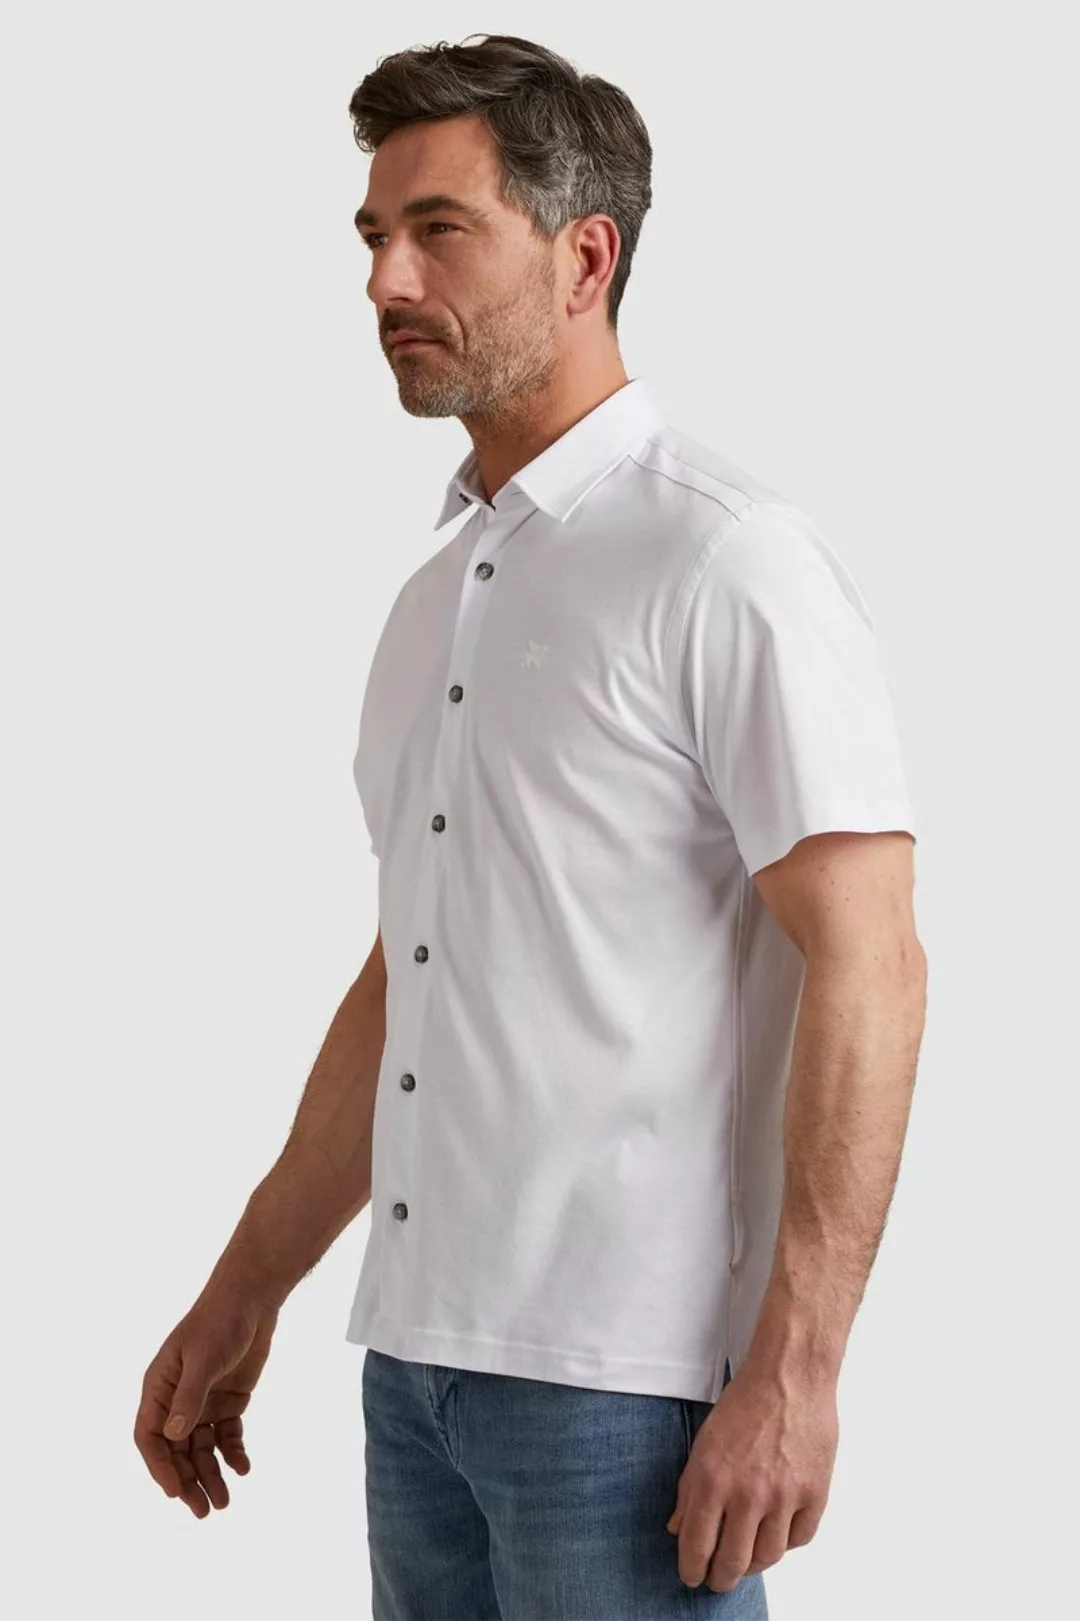 Vanguard Short Sleeves Hemd Weiß - Größe M günstig online kaufen